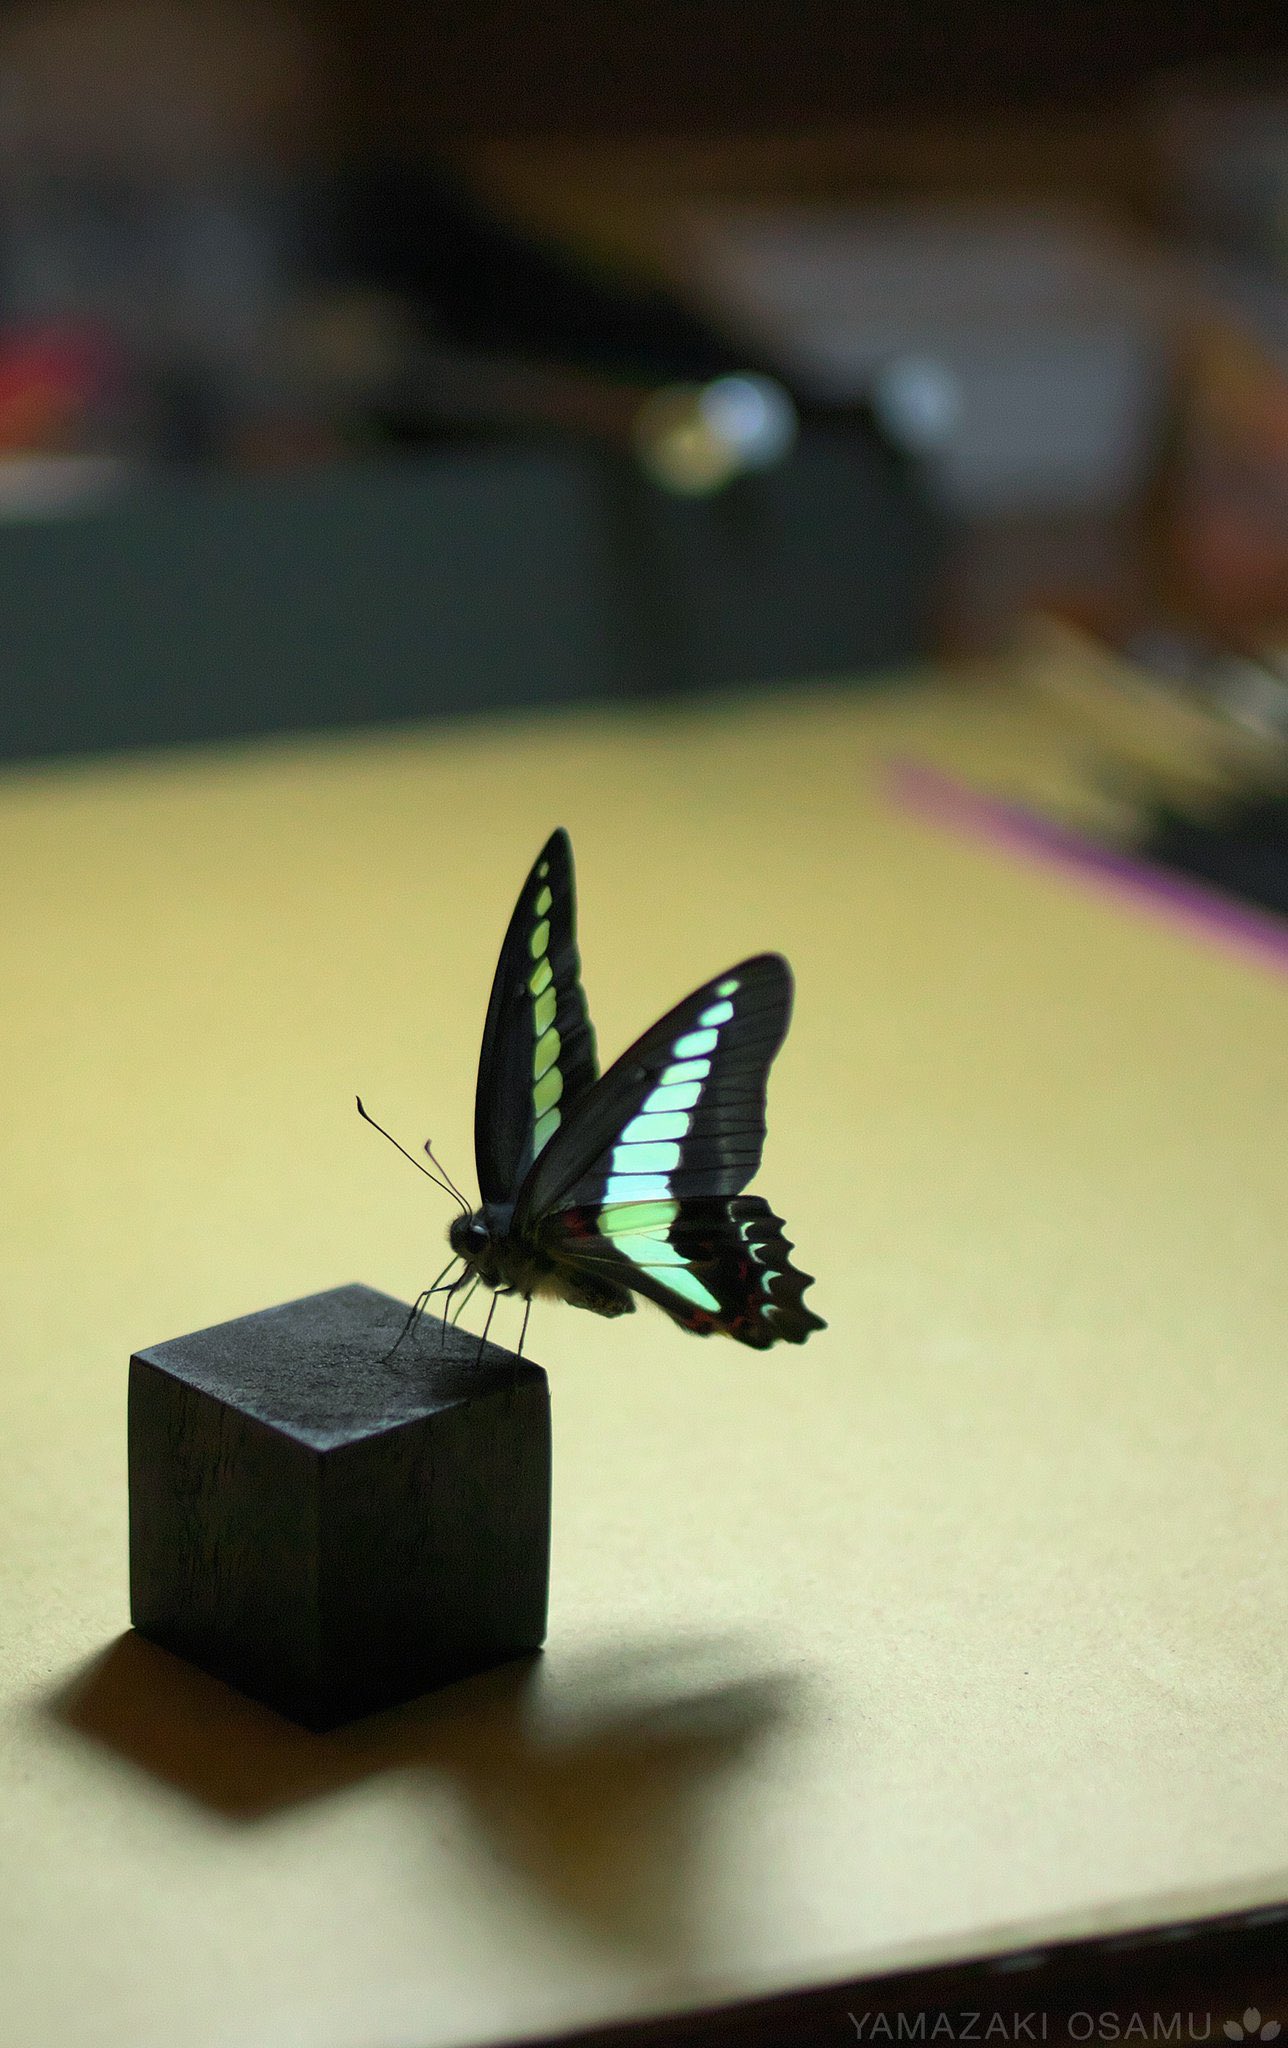 山﨑 理 Yamazaki Osamu ピンを使わない蝶の標本を作っています 生きているような姿を目指してます 立体展翅 Butterflyspecimen T Co Yzjq1yorhg Twitter